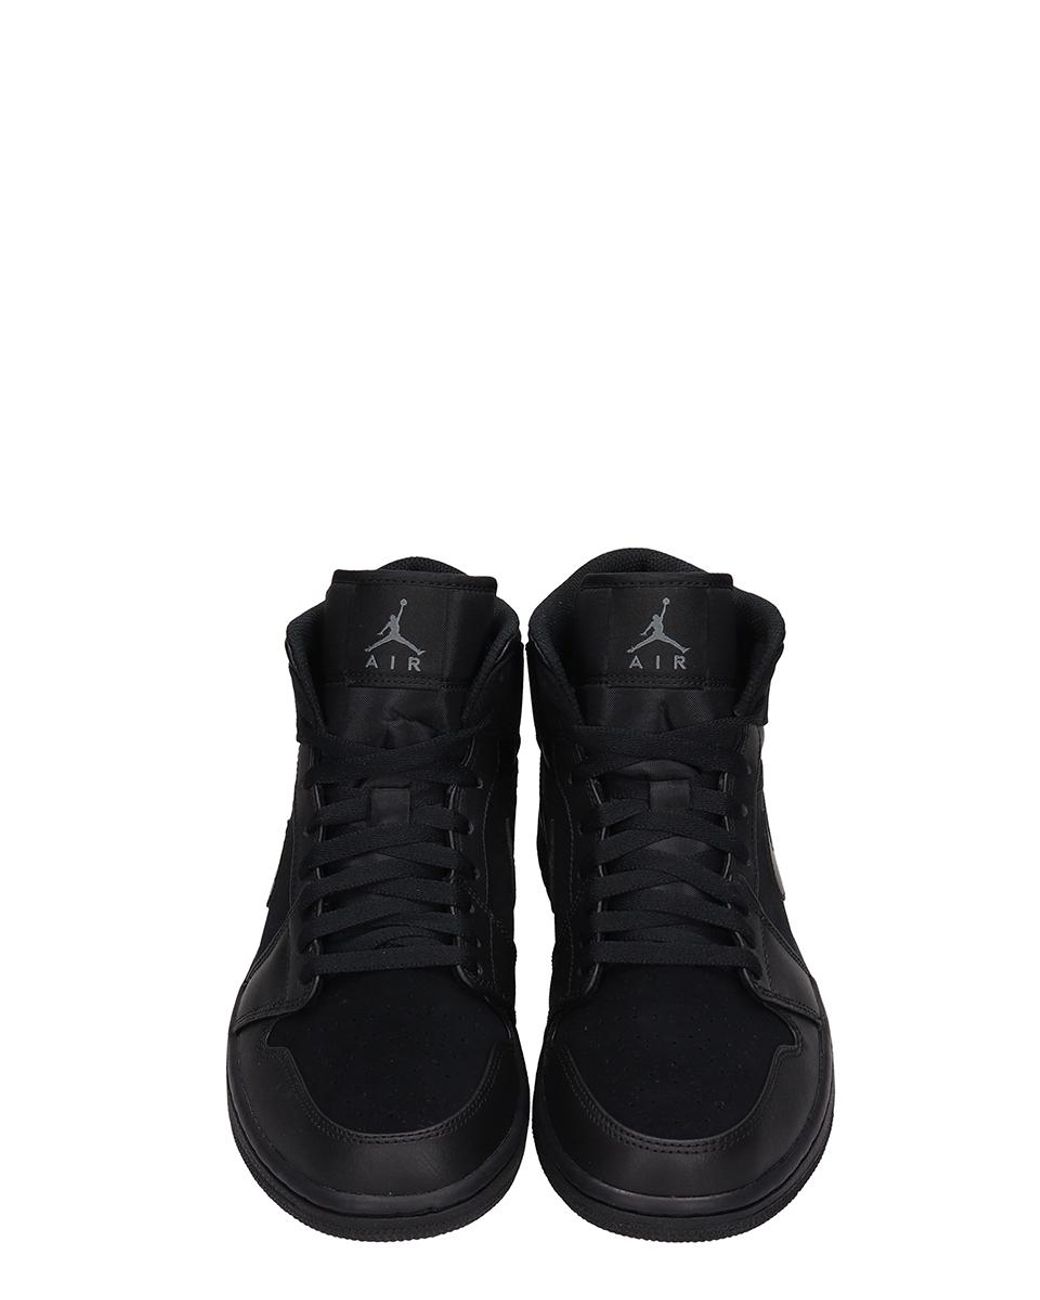 all black sneakers jordans